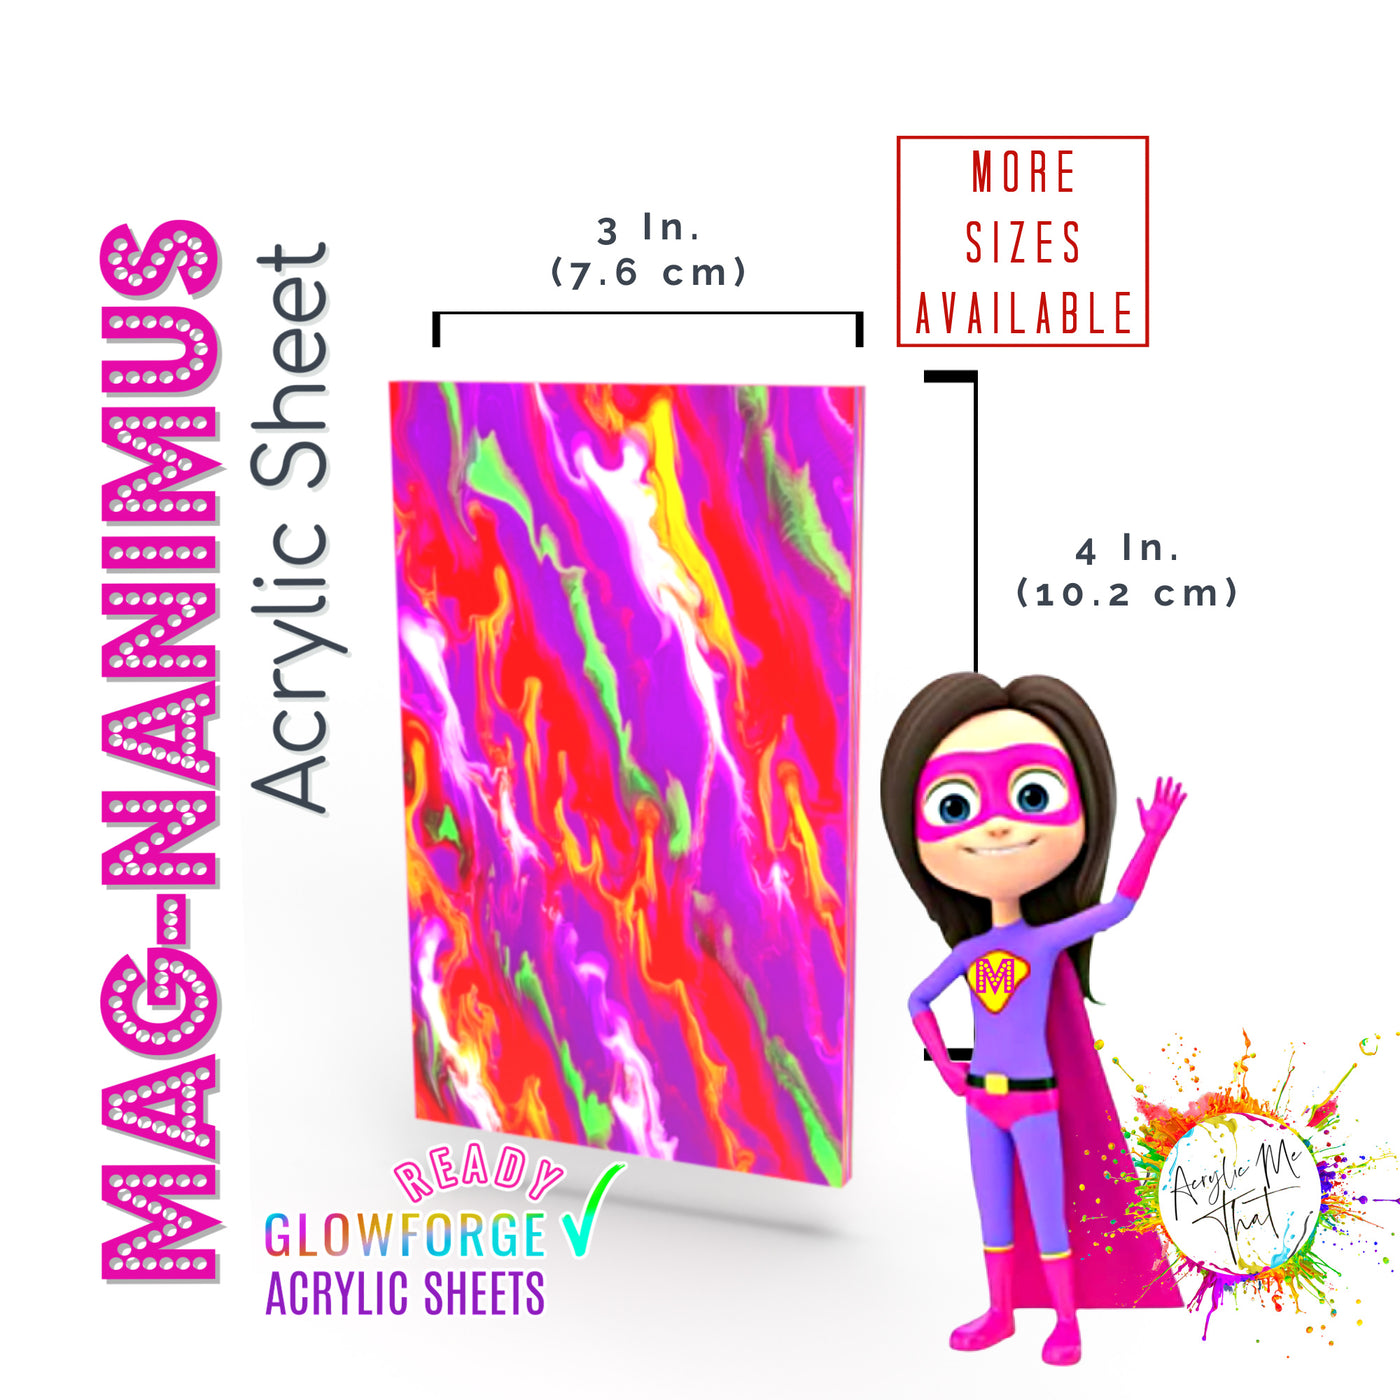 Mag-Nanimus Magenta, Neon Green, White, Red, Yellow, White Marble Swirl Acrylic Sheet